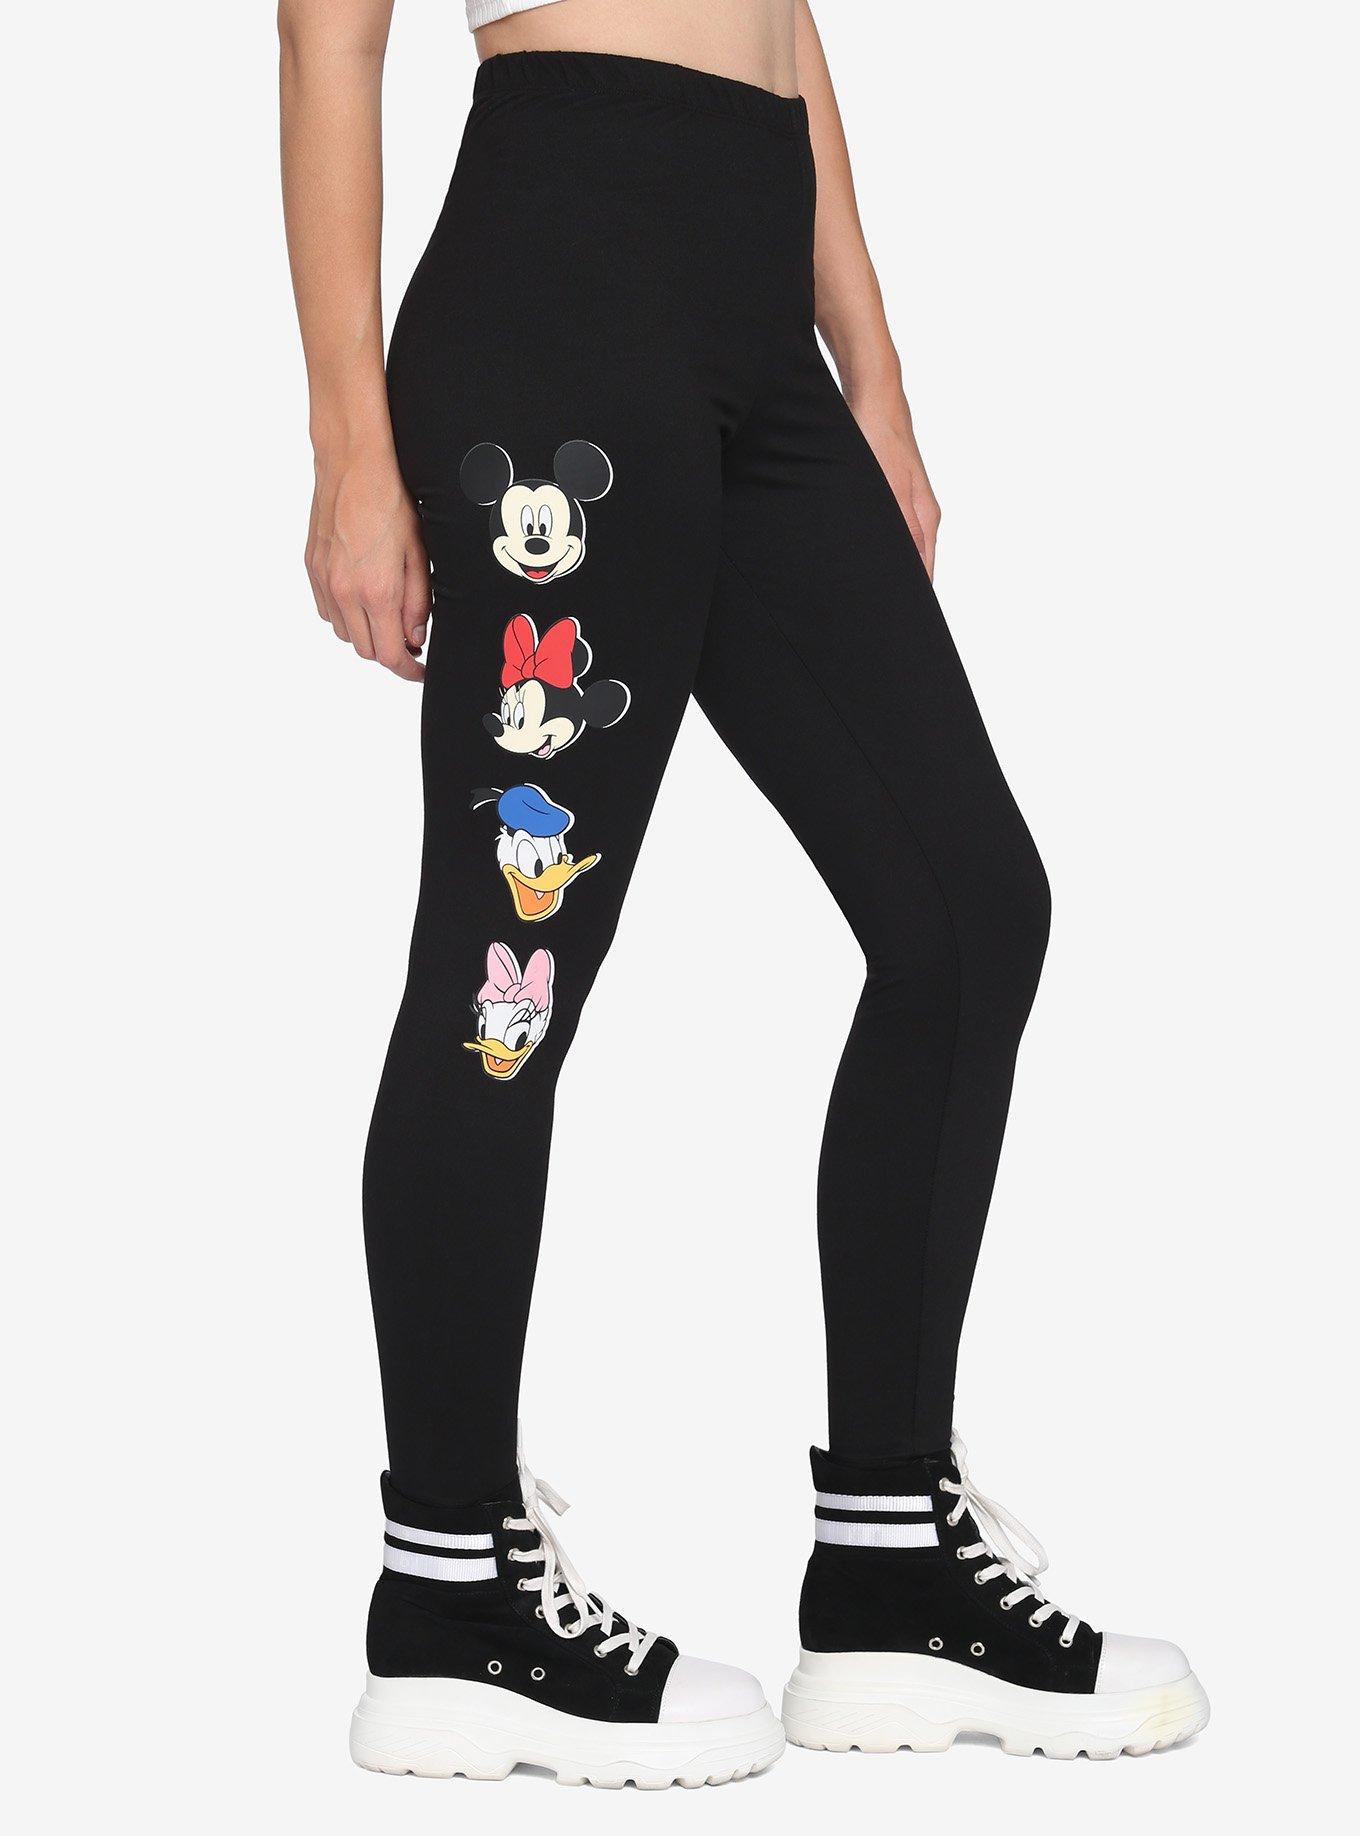 Disney© Mickey Mouse Leggings for Girls